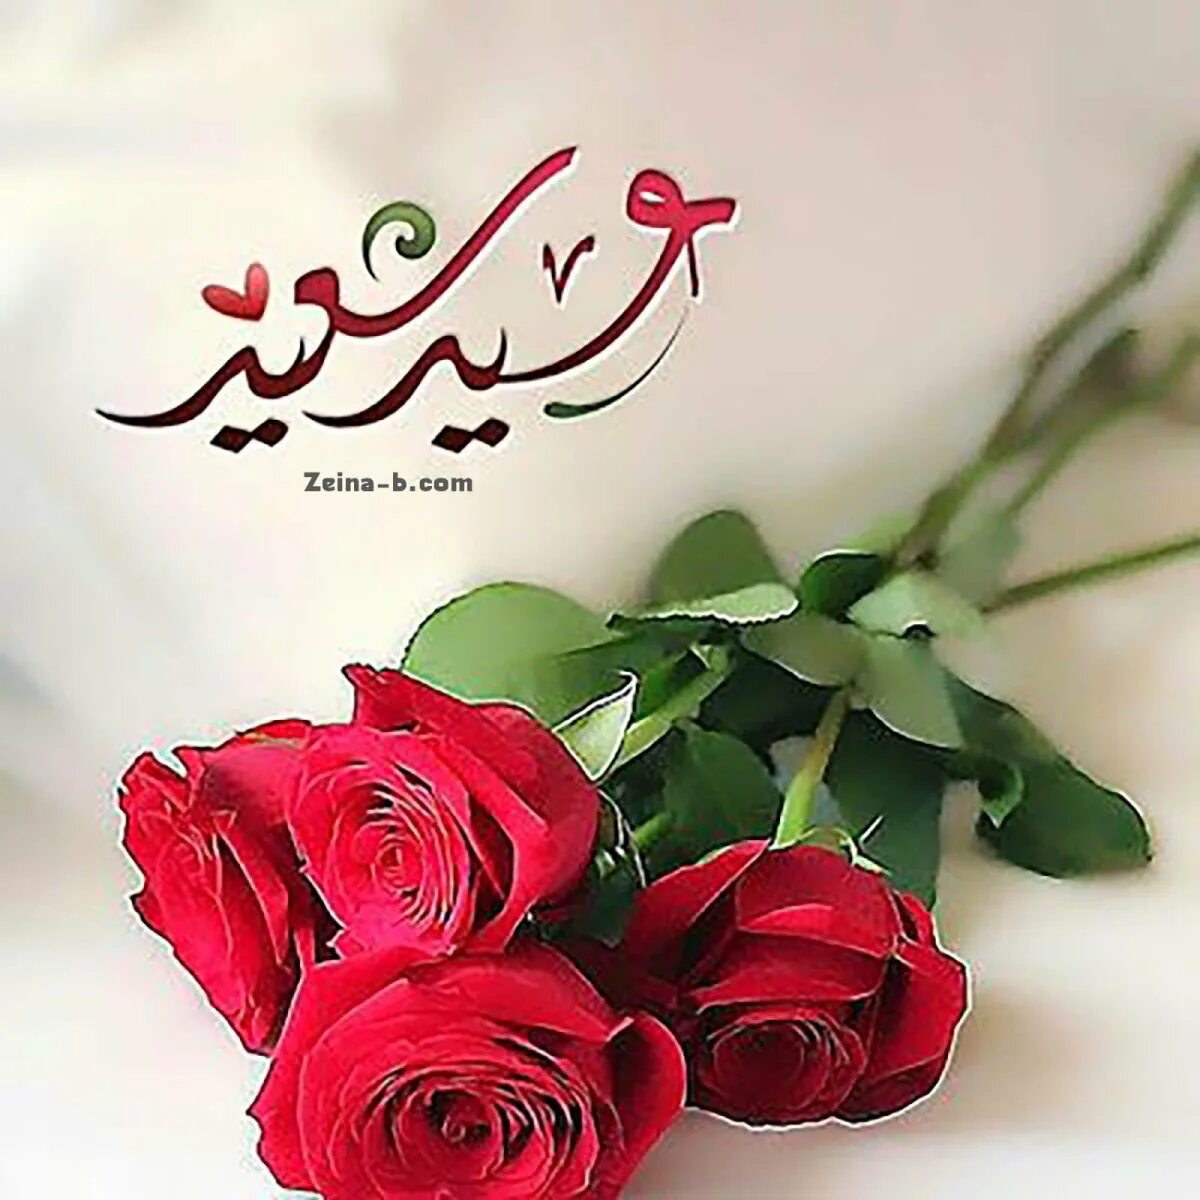 Арабский язык поздравления. Мусульманские пожелания. Красивые мусульманские пожелания. Поздравления на арабском языке. Мусульманские цветы.